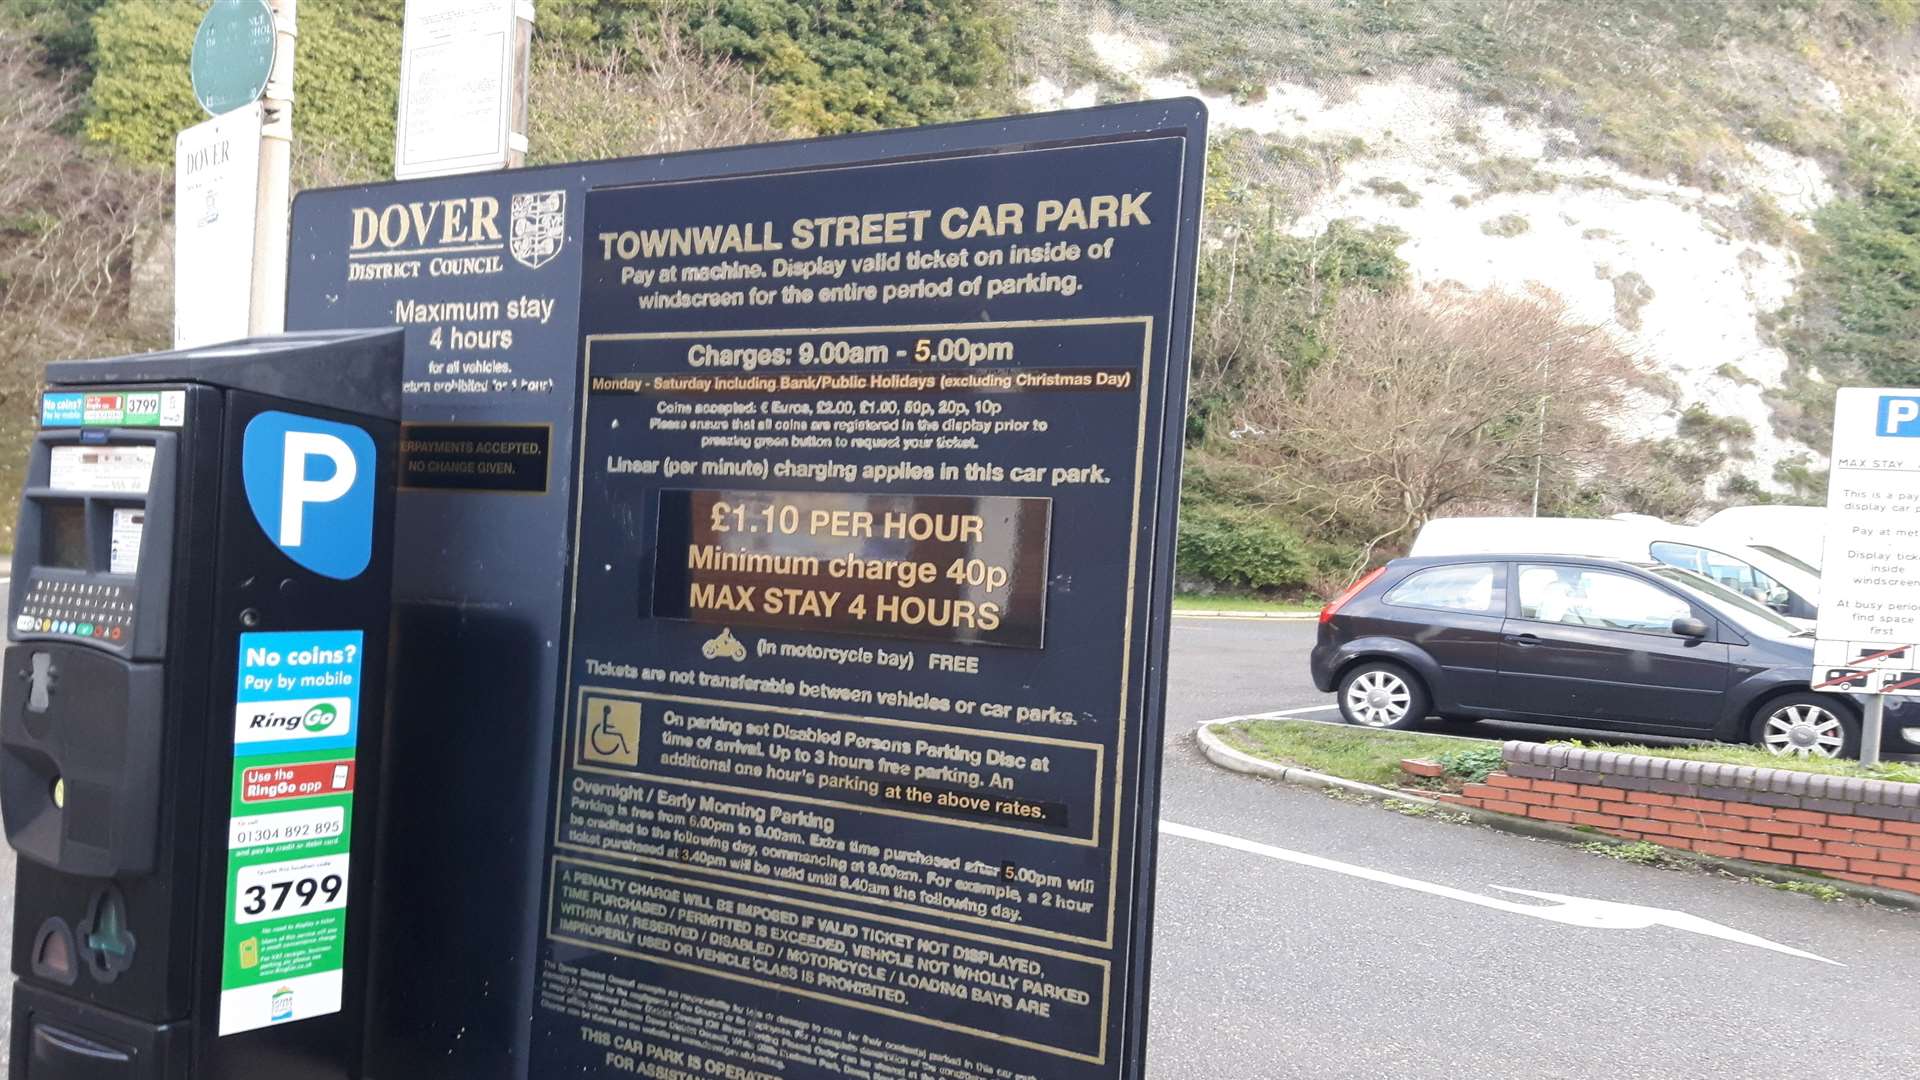 Townwall Street car park, Dover